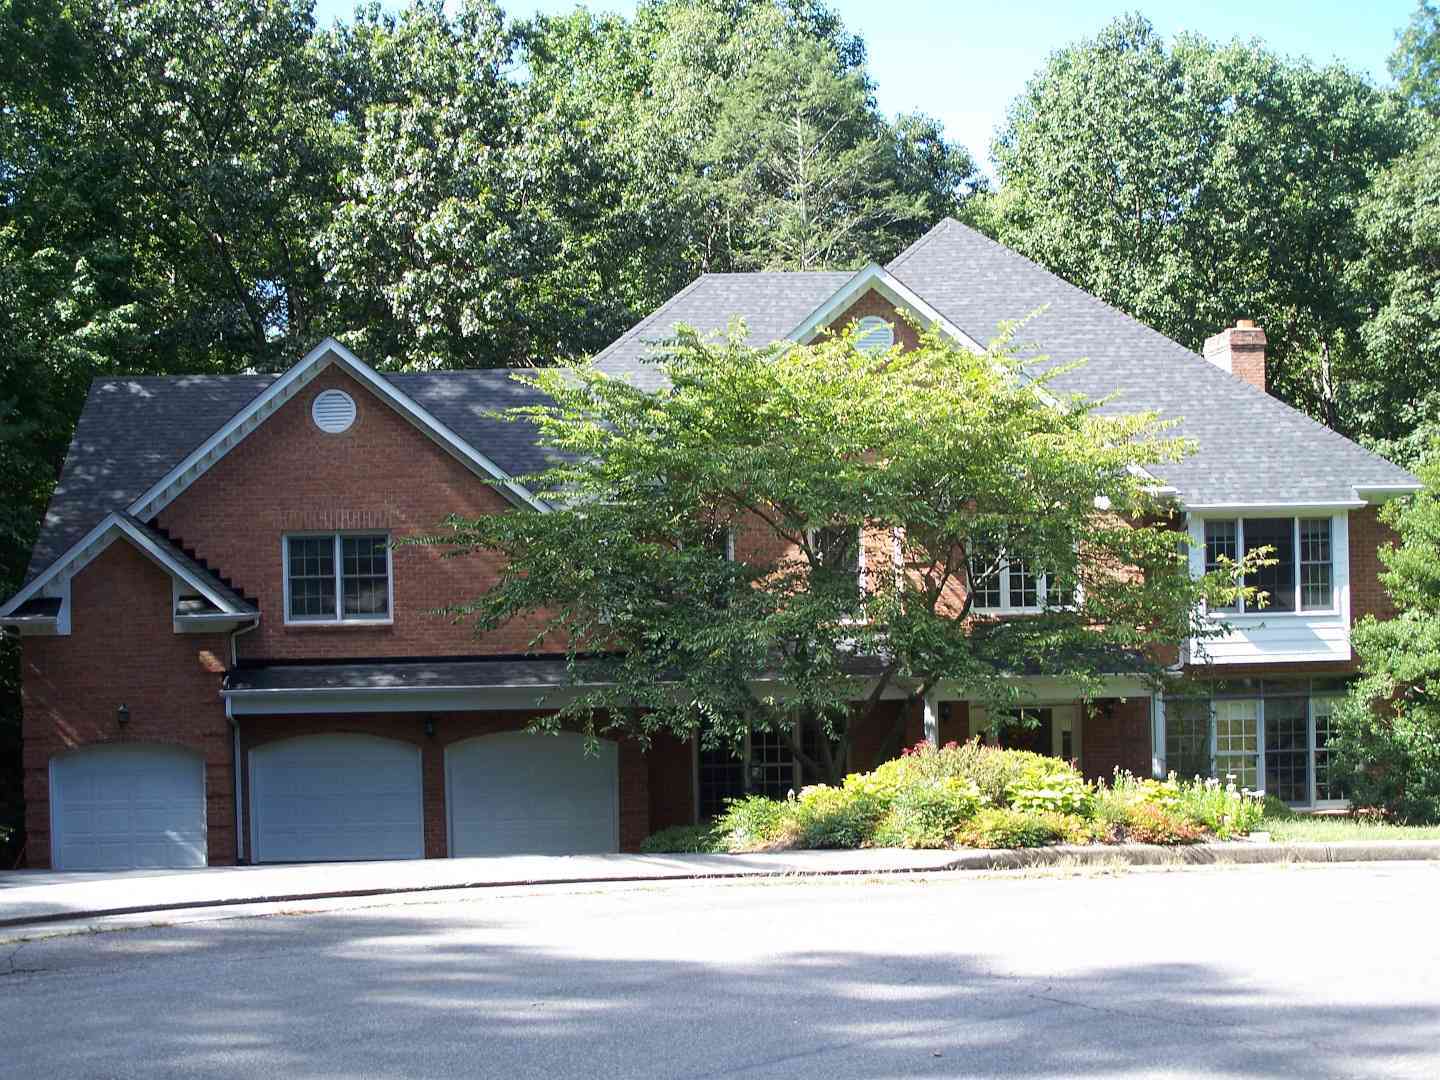 A single family home in Roanoke